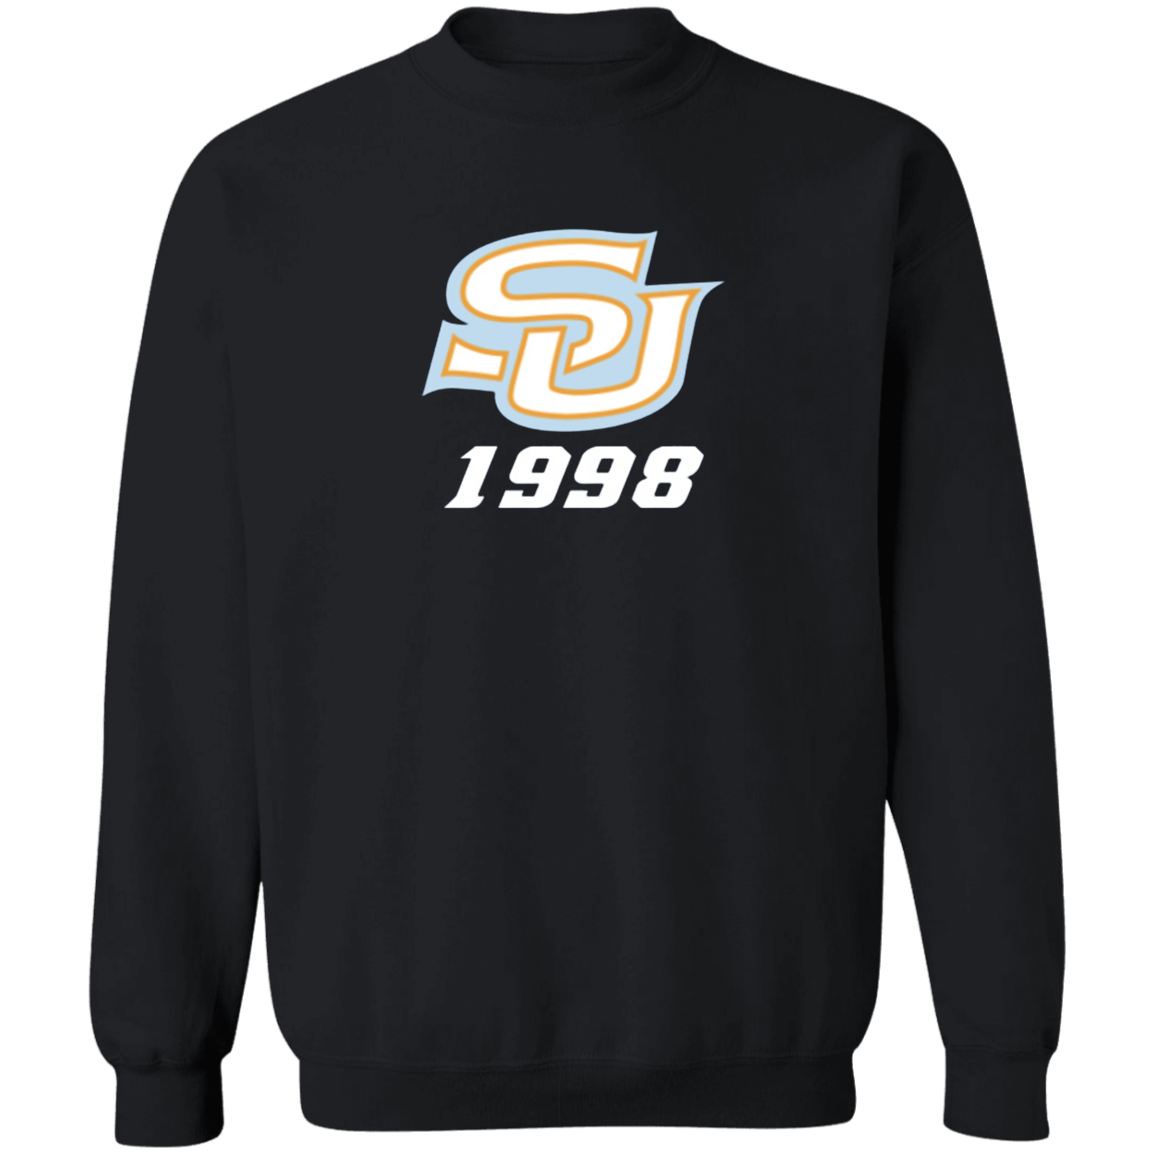 SU c/o 1998 G180 Crewneck Pullover Sweatshirt